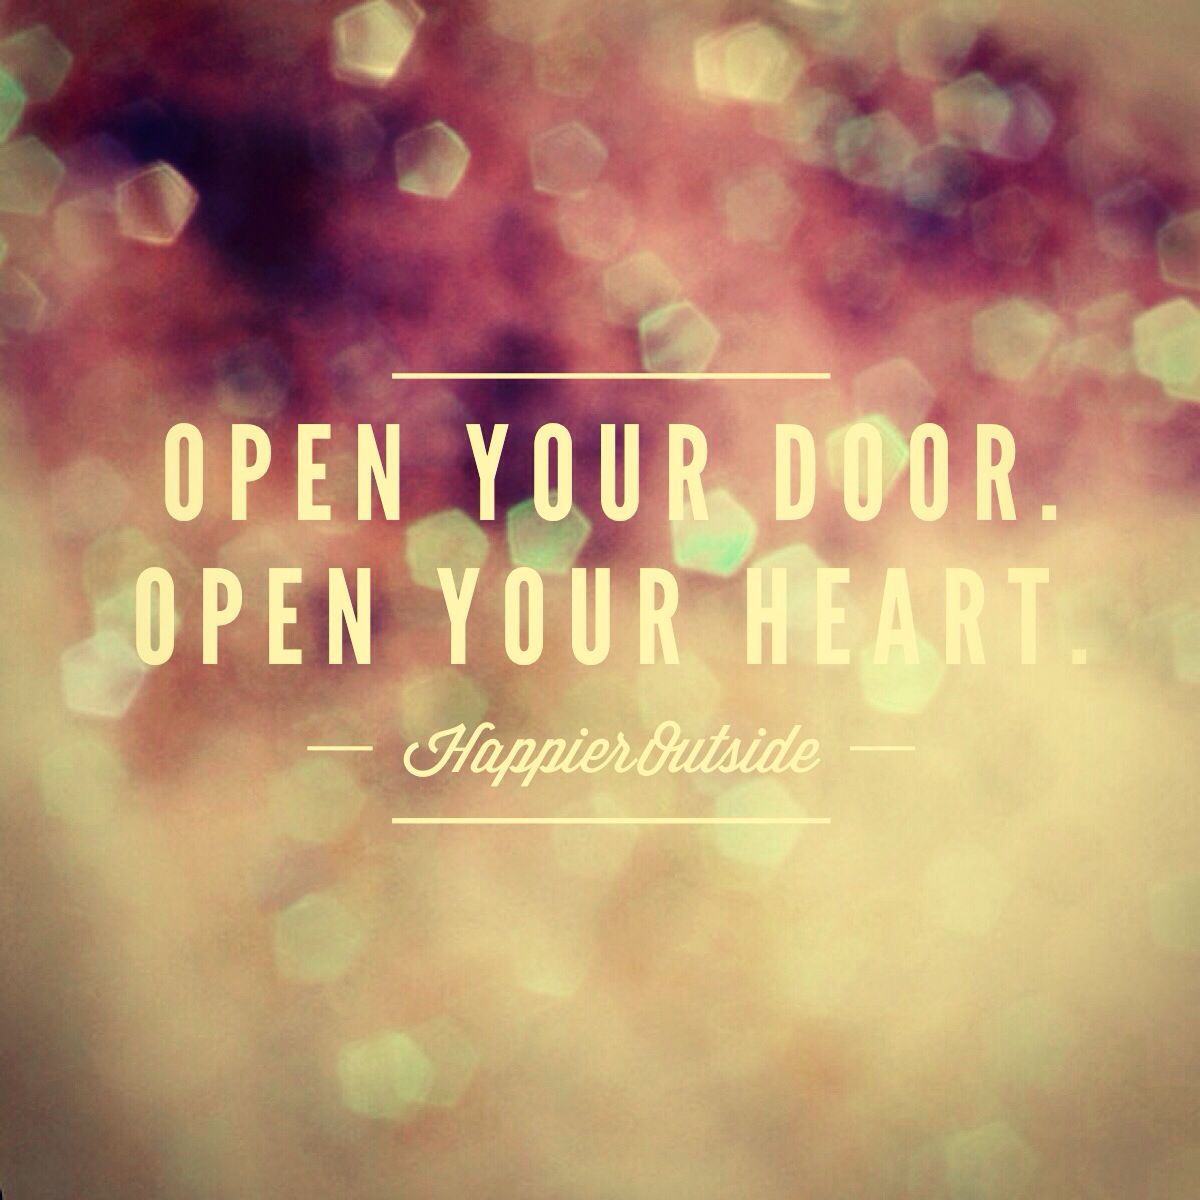 open your door. open your heart.